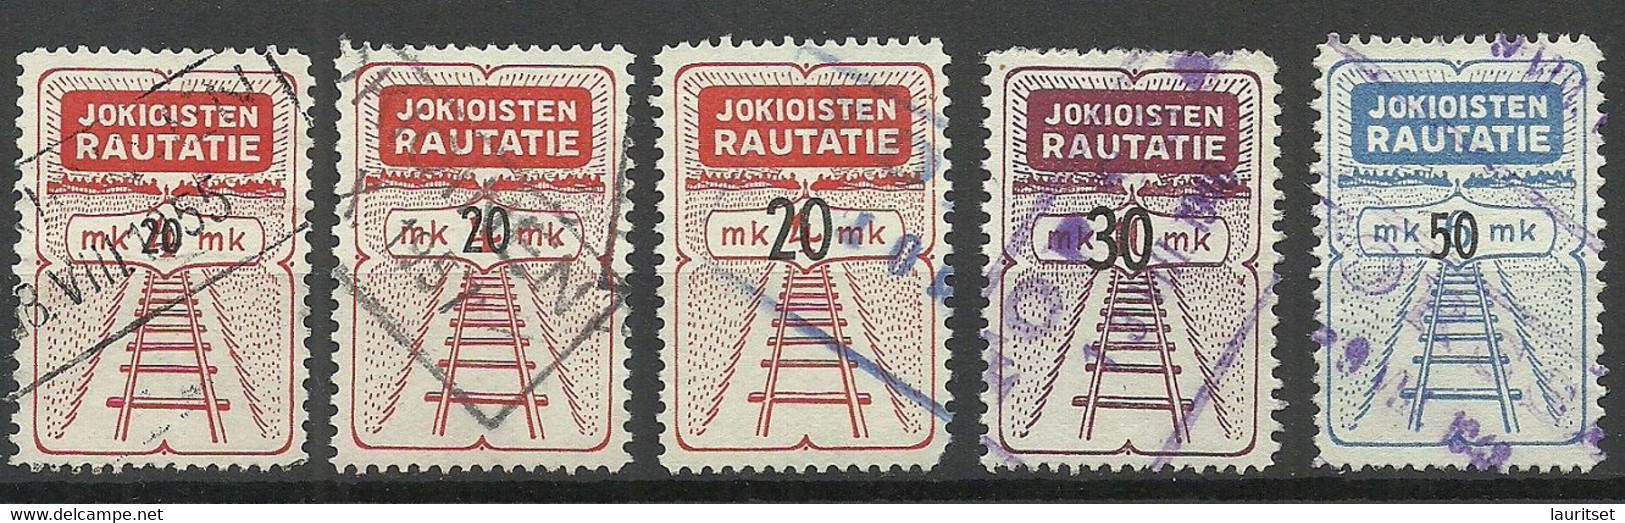 FINLAND FINNLAND 1946-1953 Jokioisten Railway Stamps O - Postpaketten